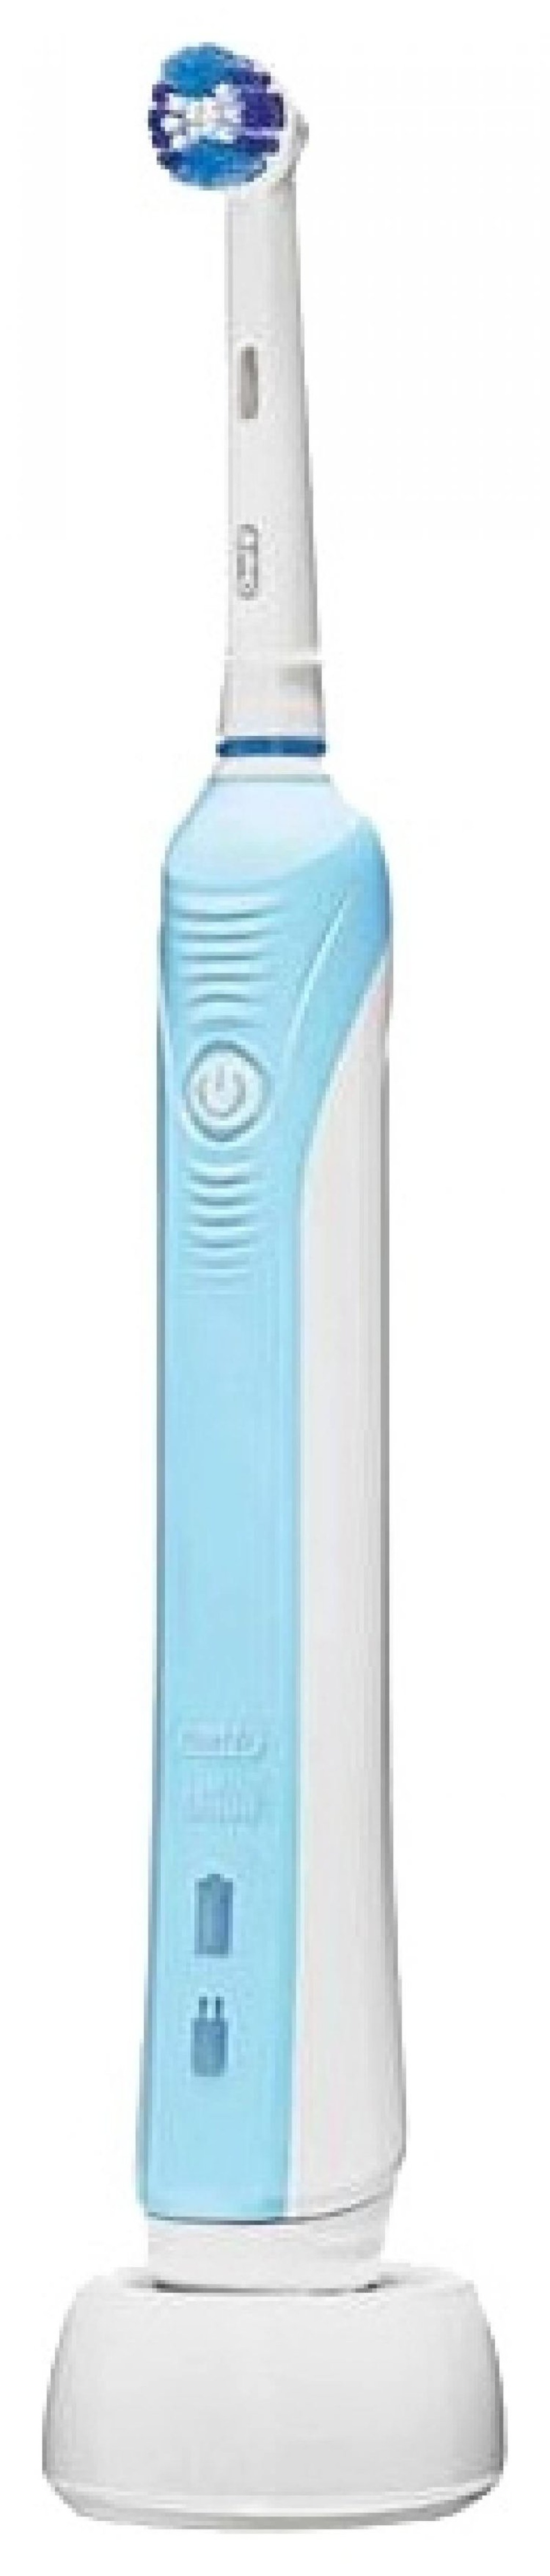 Зубная щетка электрическая Oral-B Professional Clean PС 500 голубой фото